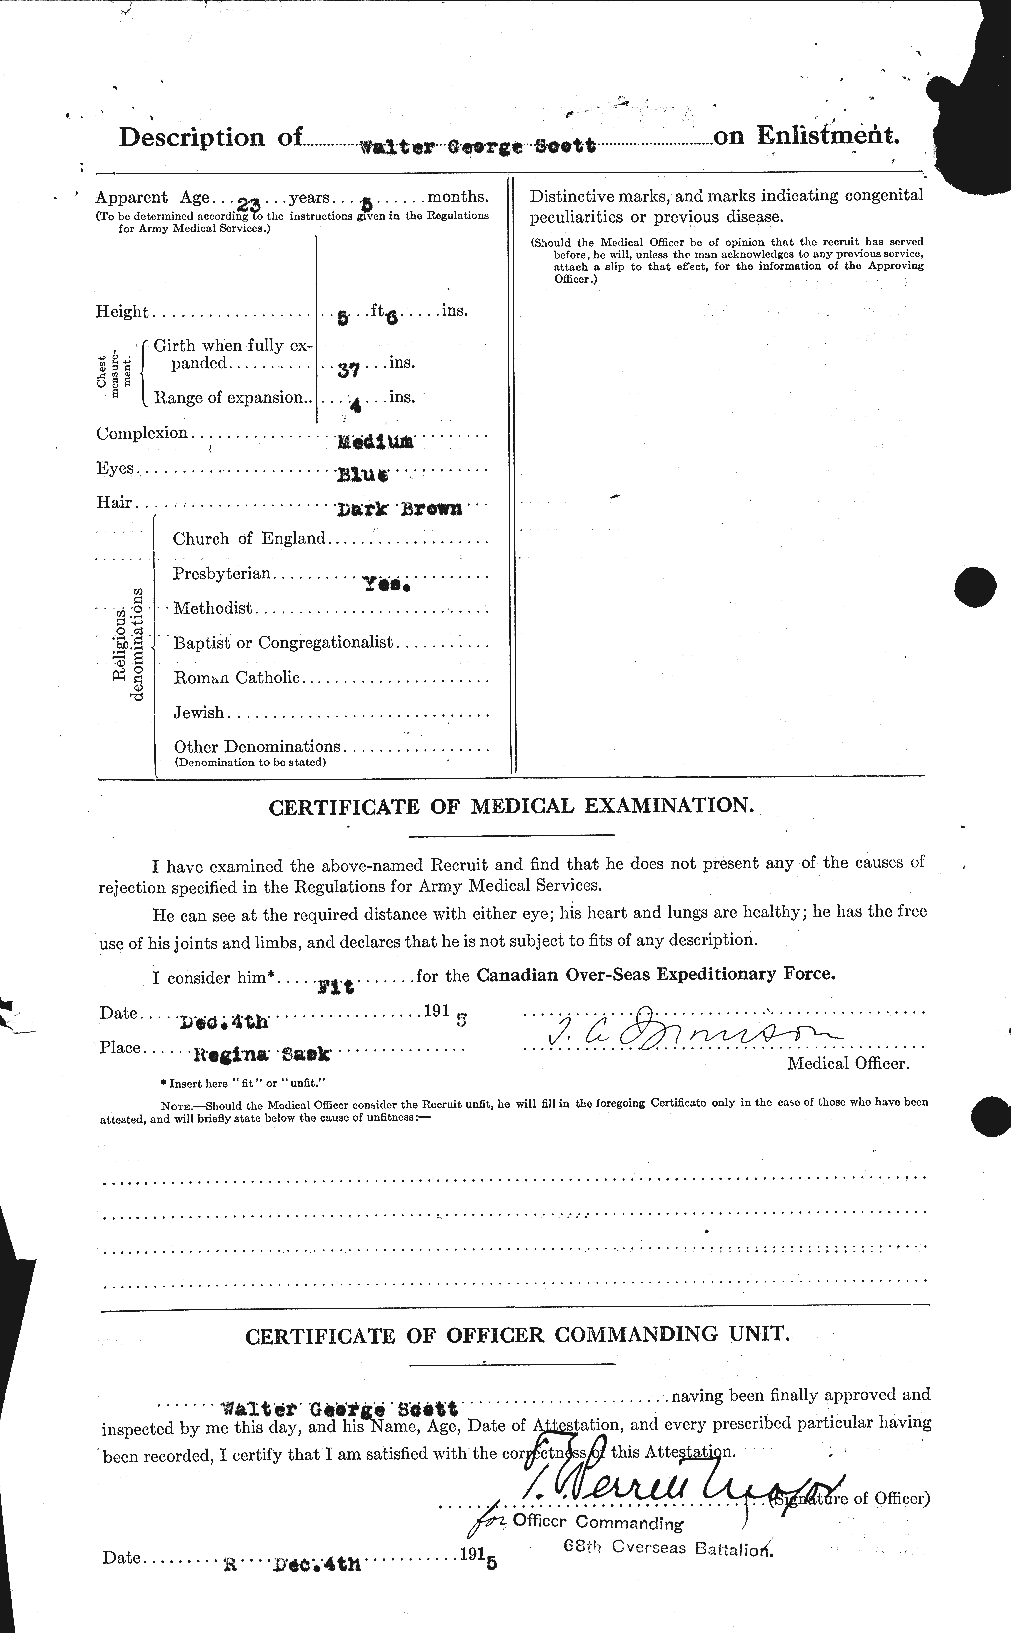 Dossiers du Personnel de la Première Guerre mondiale - CEC 087987b